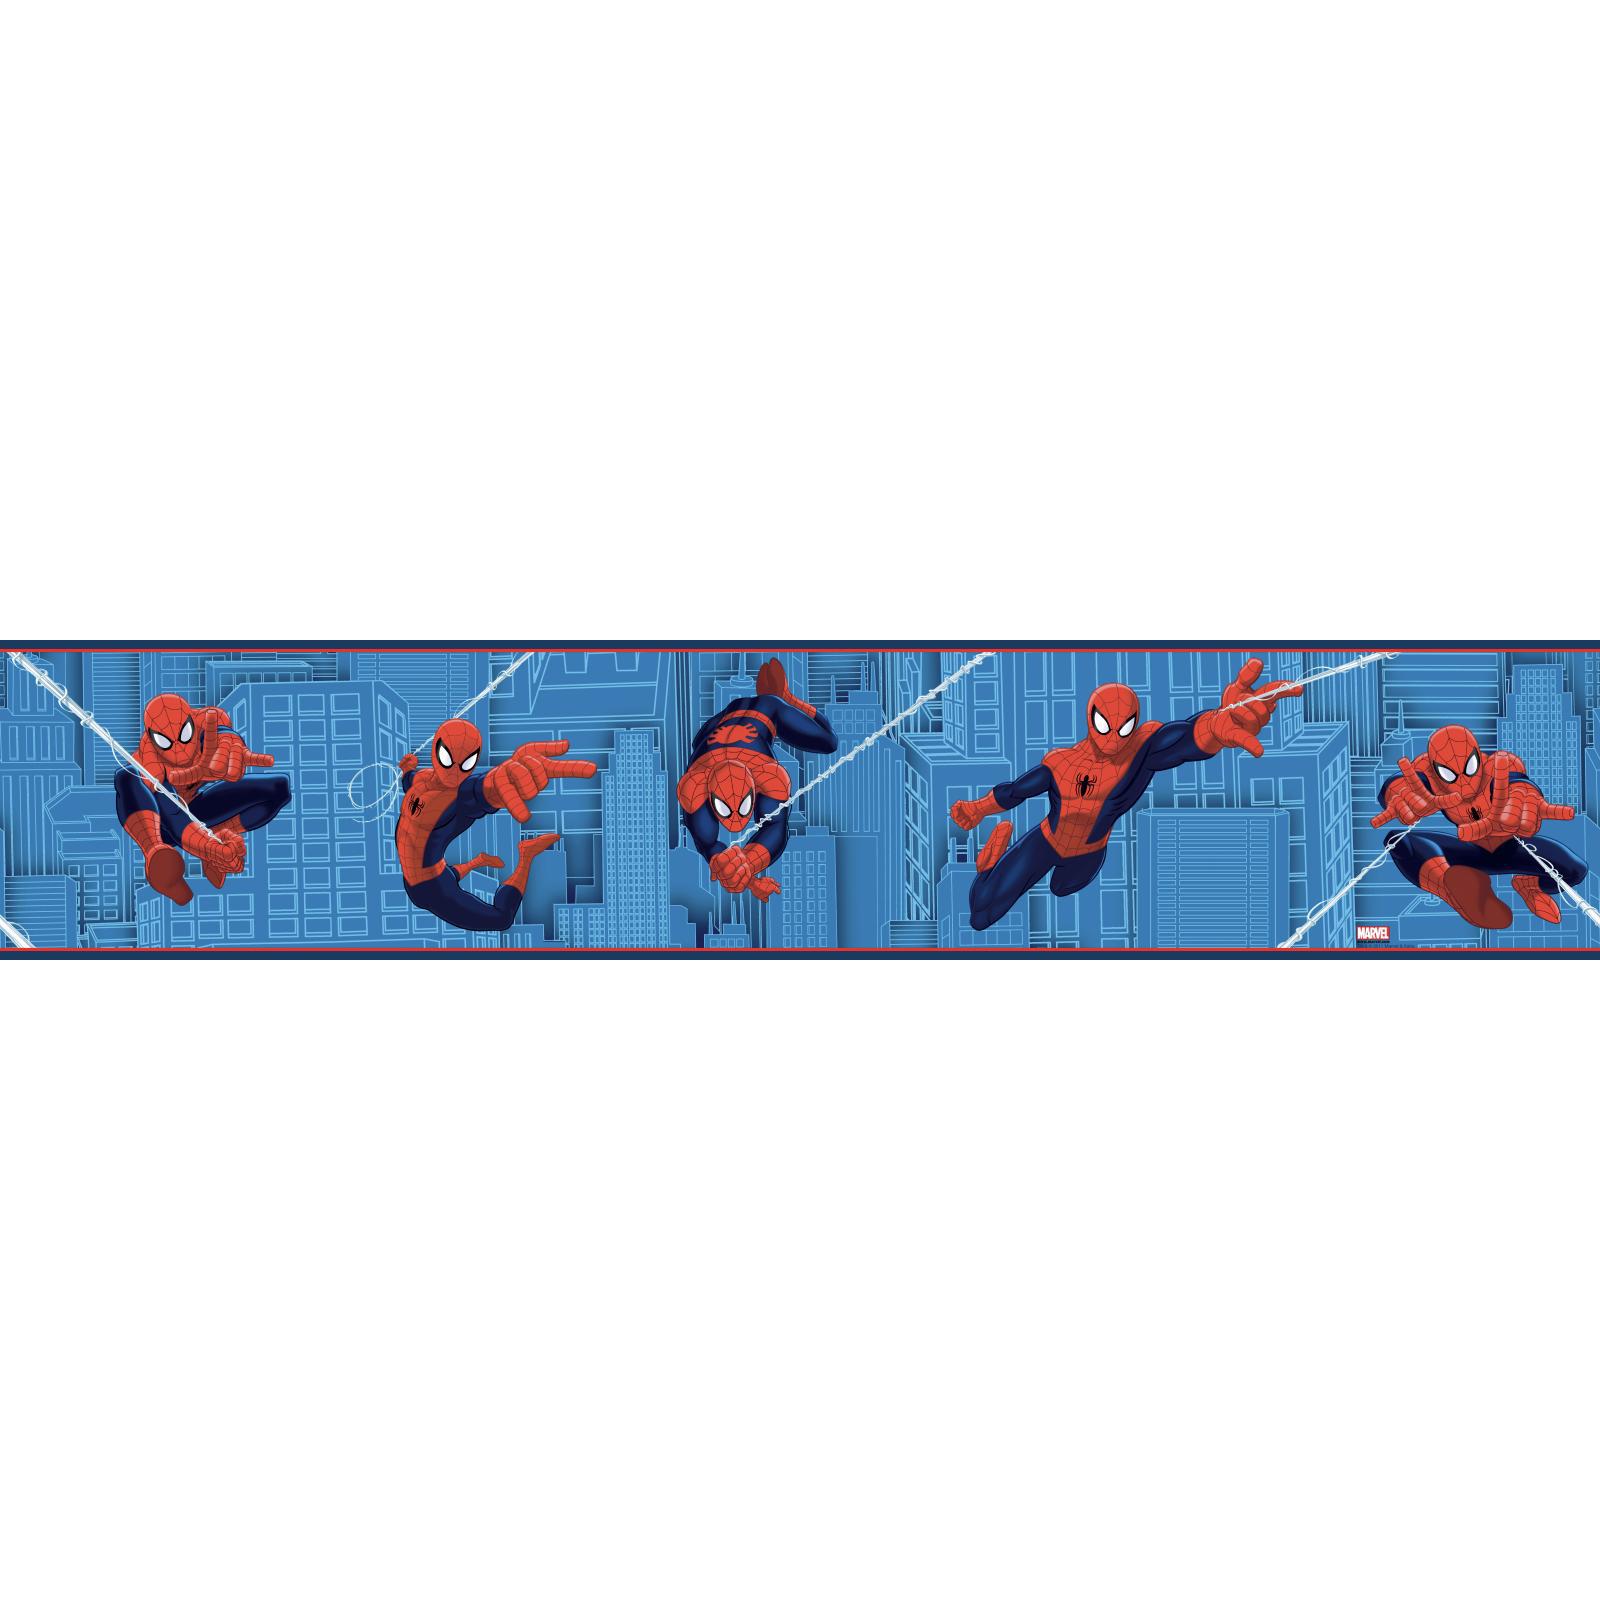 Product York Wallcoverings Walt Disney Kids Ii Ultimate Spiderman